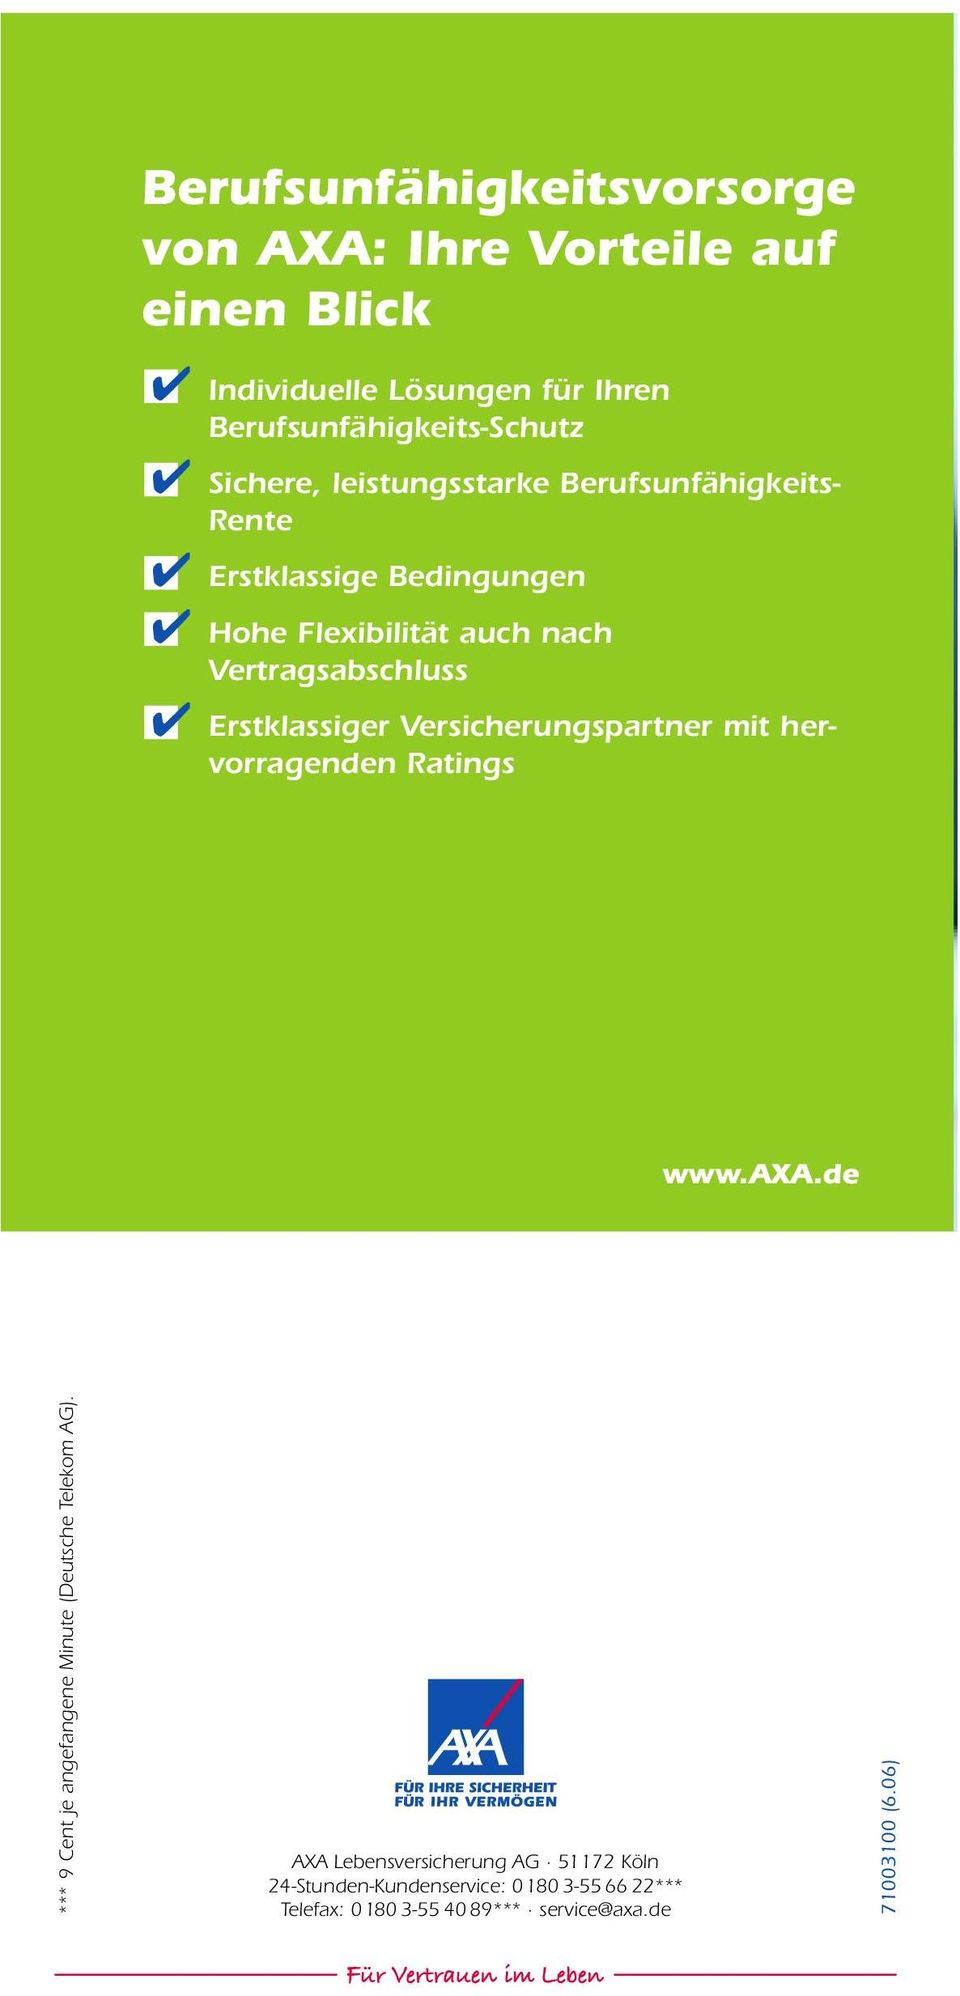 Erstklassiger Versicherungspartner mit hervorragenden Ratings www.axa.de *** 9 Cent je angefangene Minute (Deutsche Telekom AG).